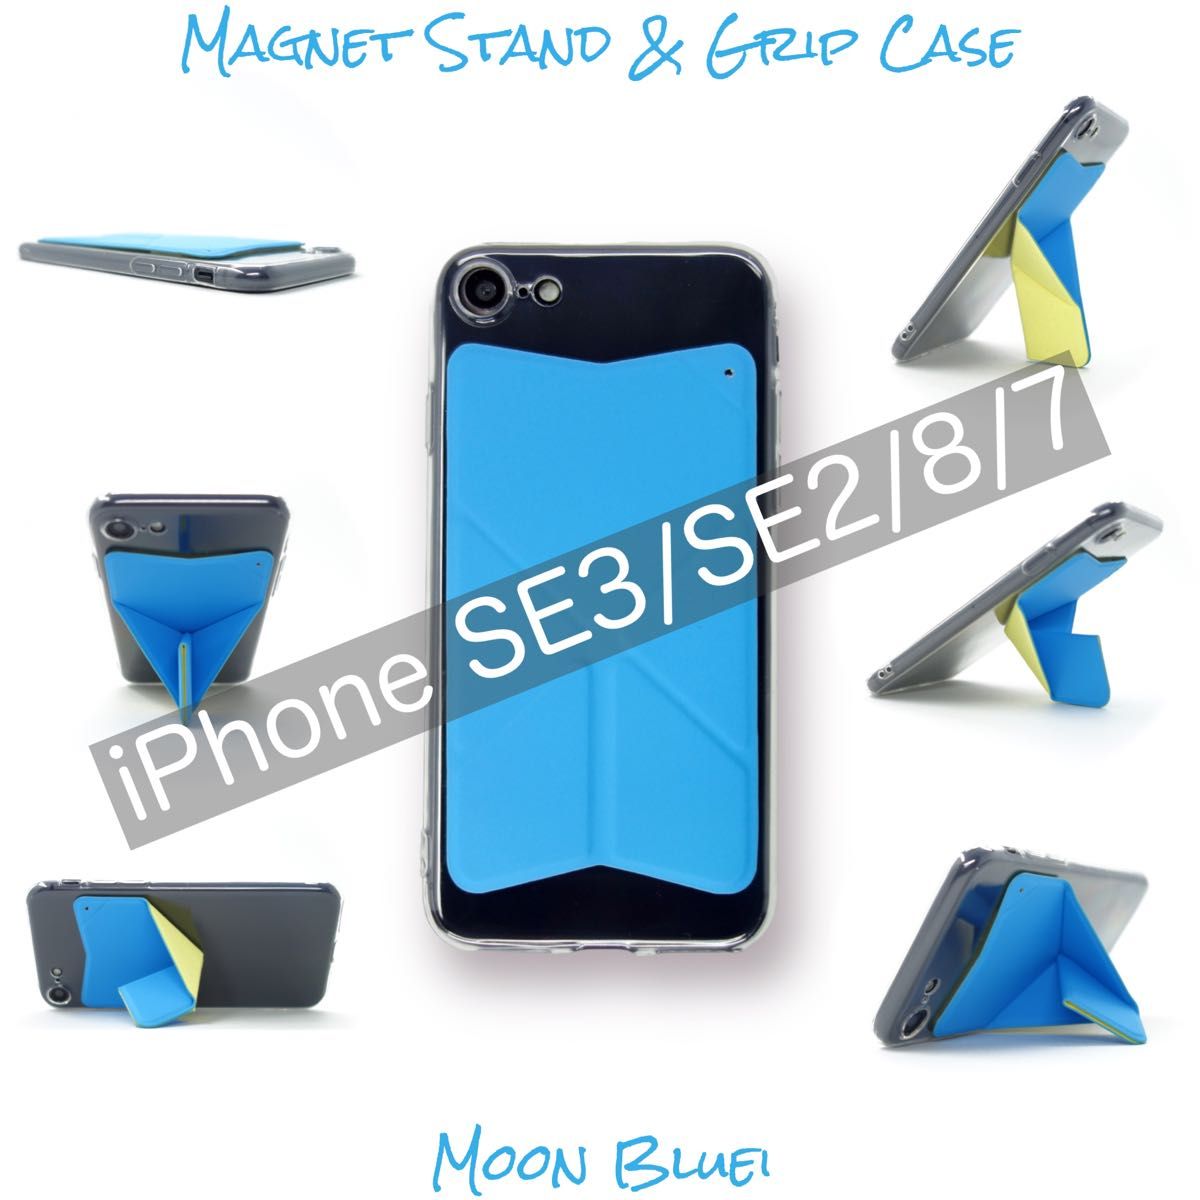 iPhone SE3 SE2 8 7 ケース スマホスタンド スマホグリップ マグネット内蔵 ワイヤレス充電OK ムーンブルー